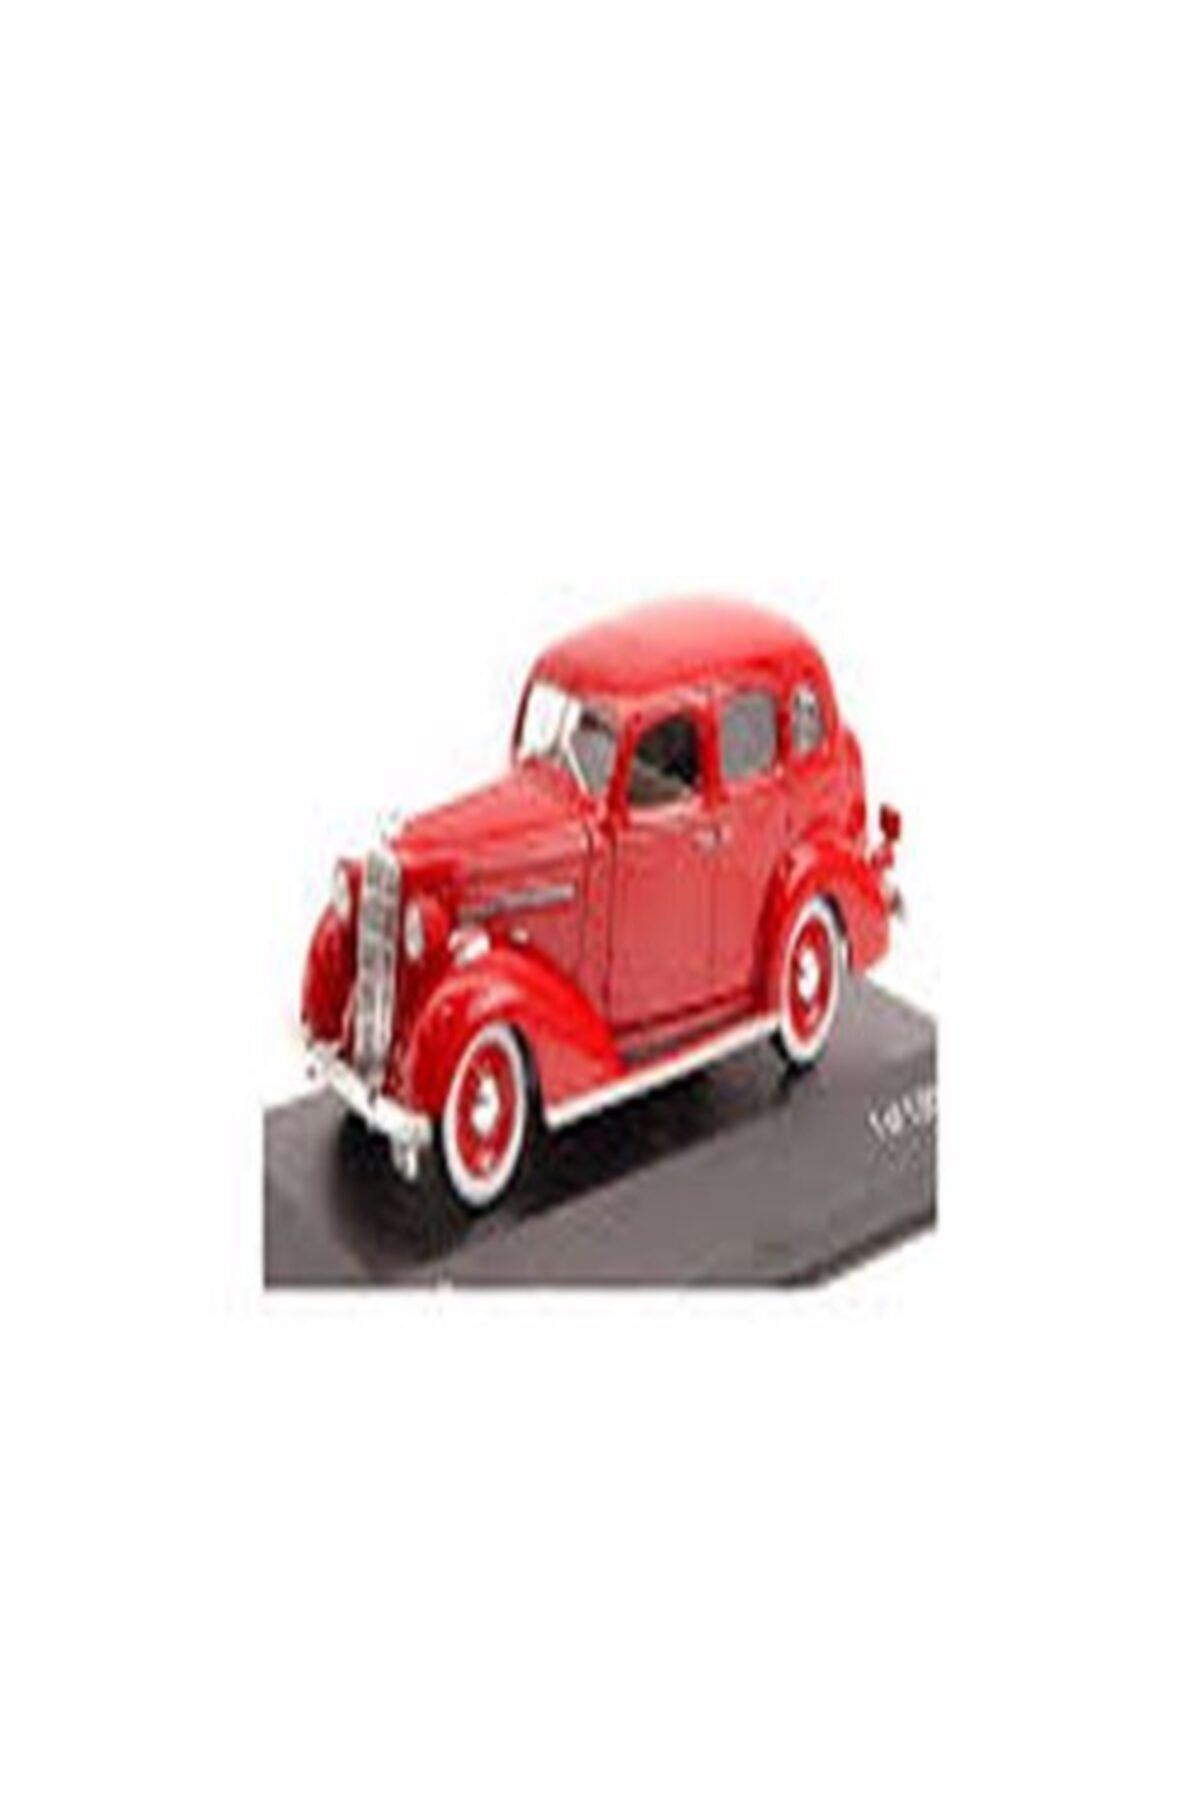 Diecast 1/43 1936 Buıck Specıal Dıecast Model Araba Hayat Oyuncak